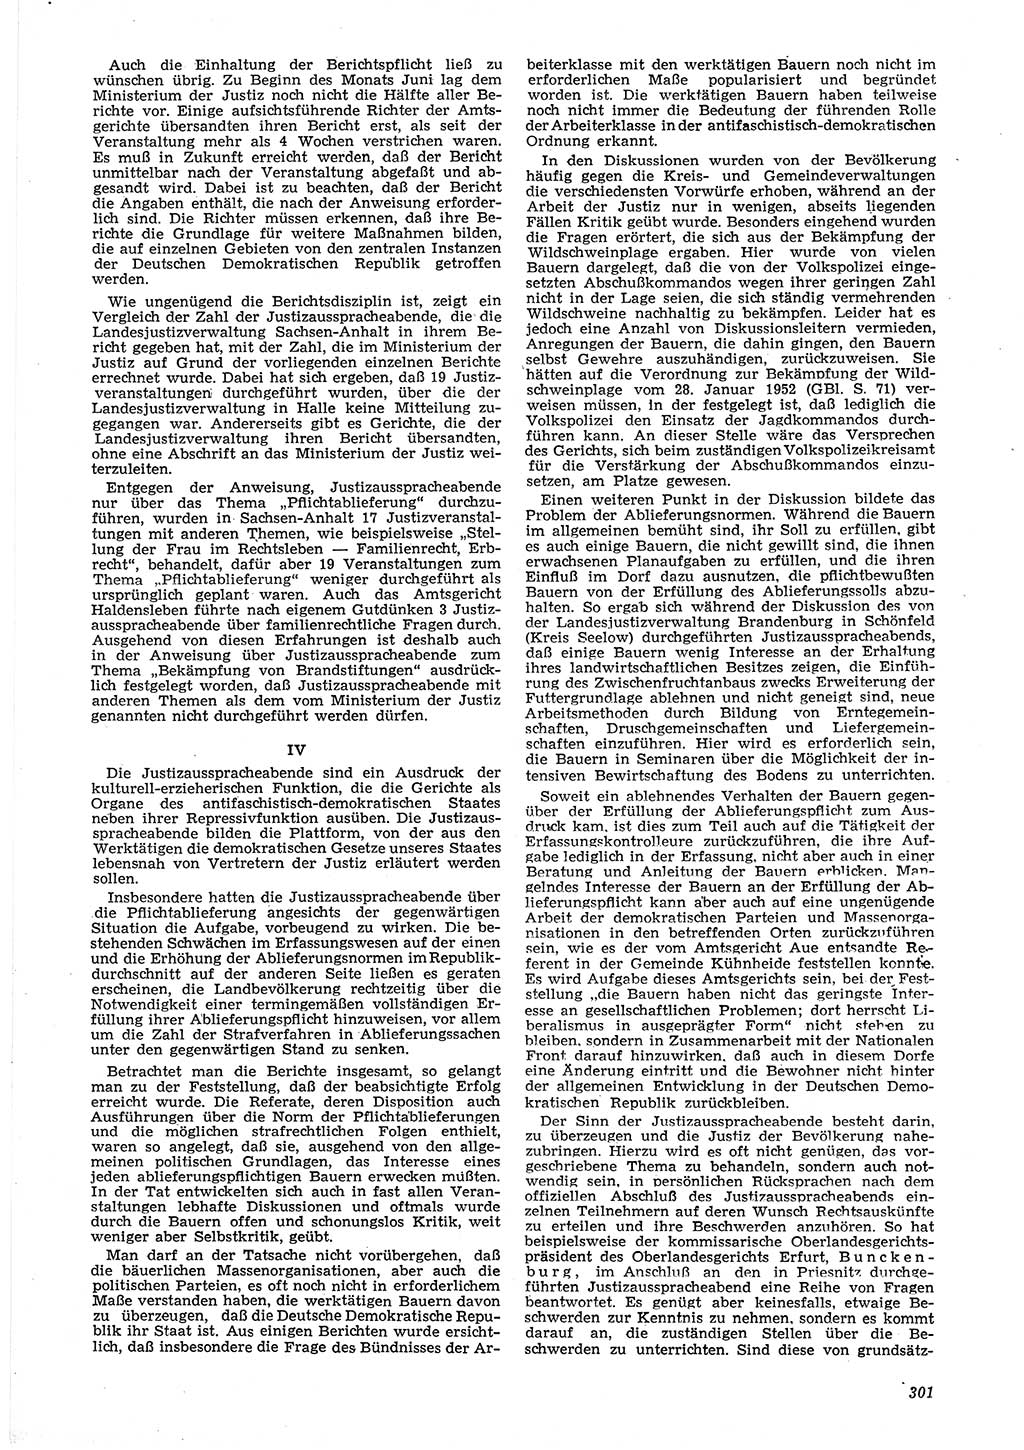 Neue Justiz (NJ), Zeitschrift für Recht und Rechtswissenschaft [Deutsche Demokratische Republik (DDR)], 6. Jahrgang 1952, Seite 301 (NJ DDR 1952, S. 301)